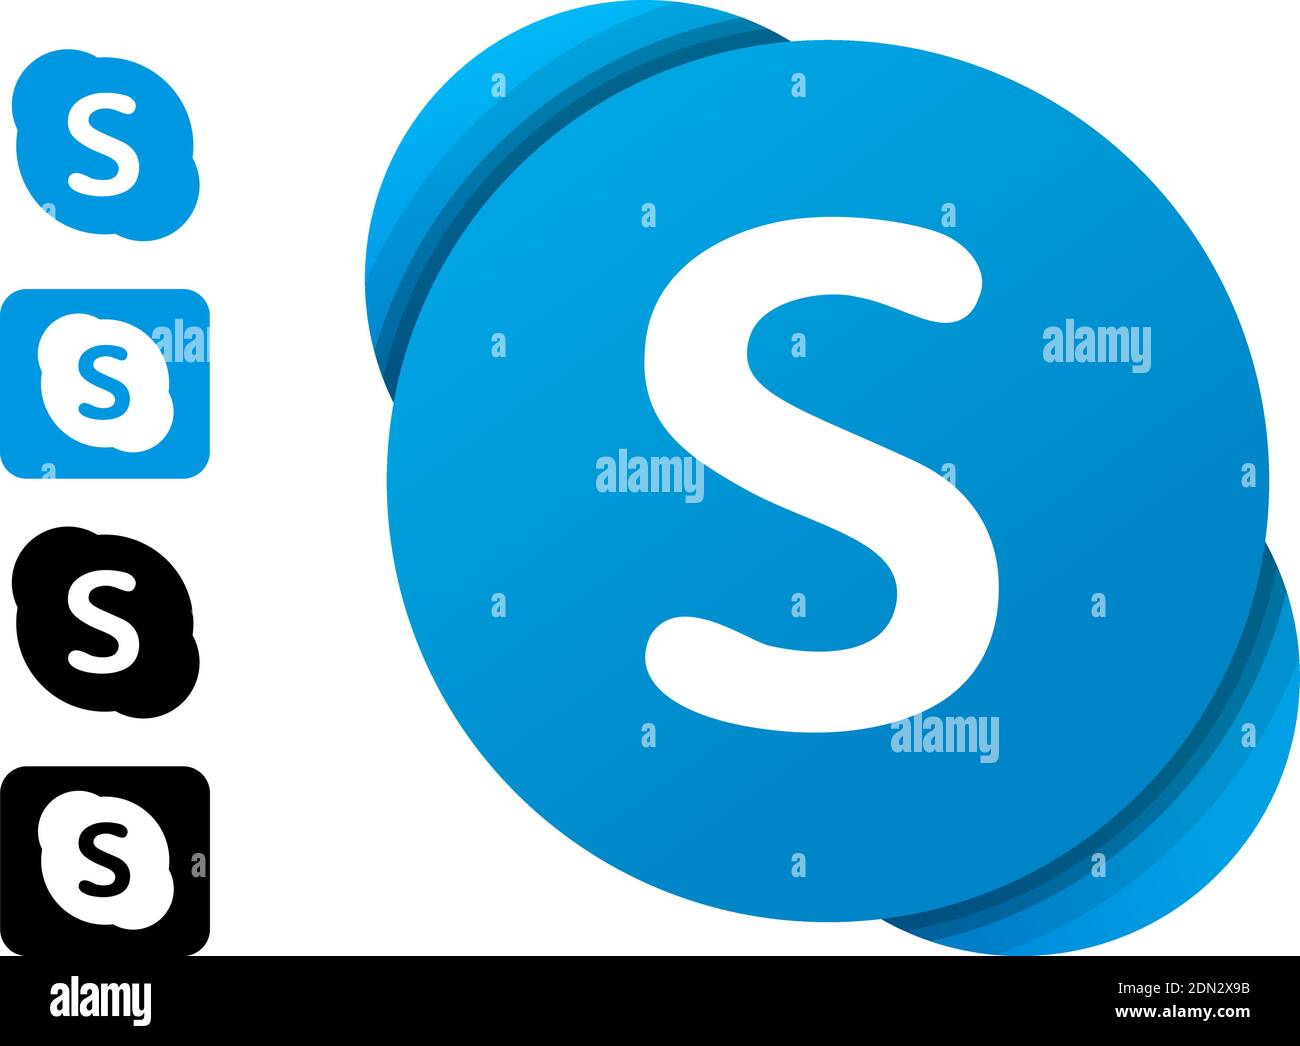 Skype editorial logo set. Vector illustration on white background Stock Vector